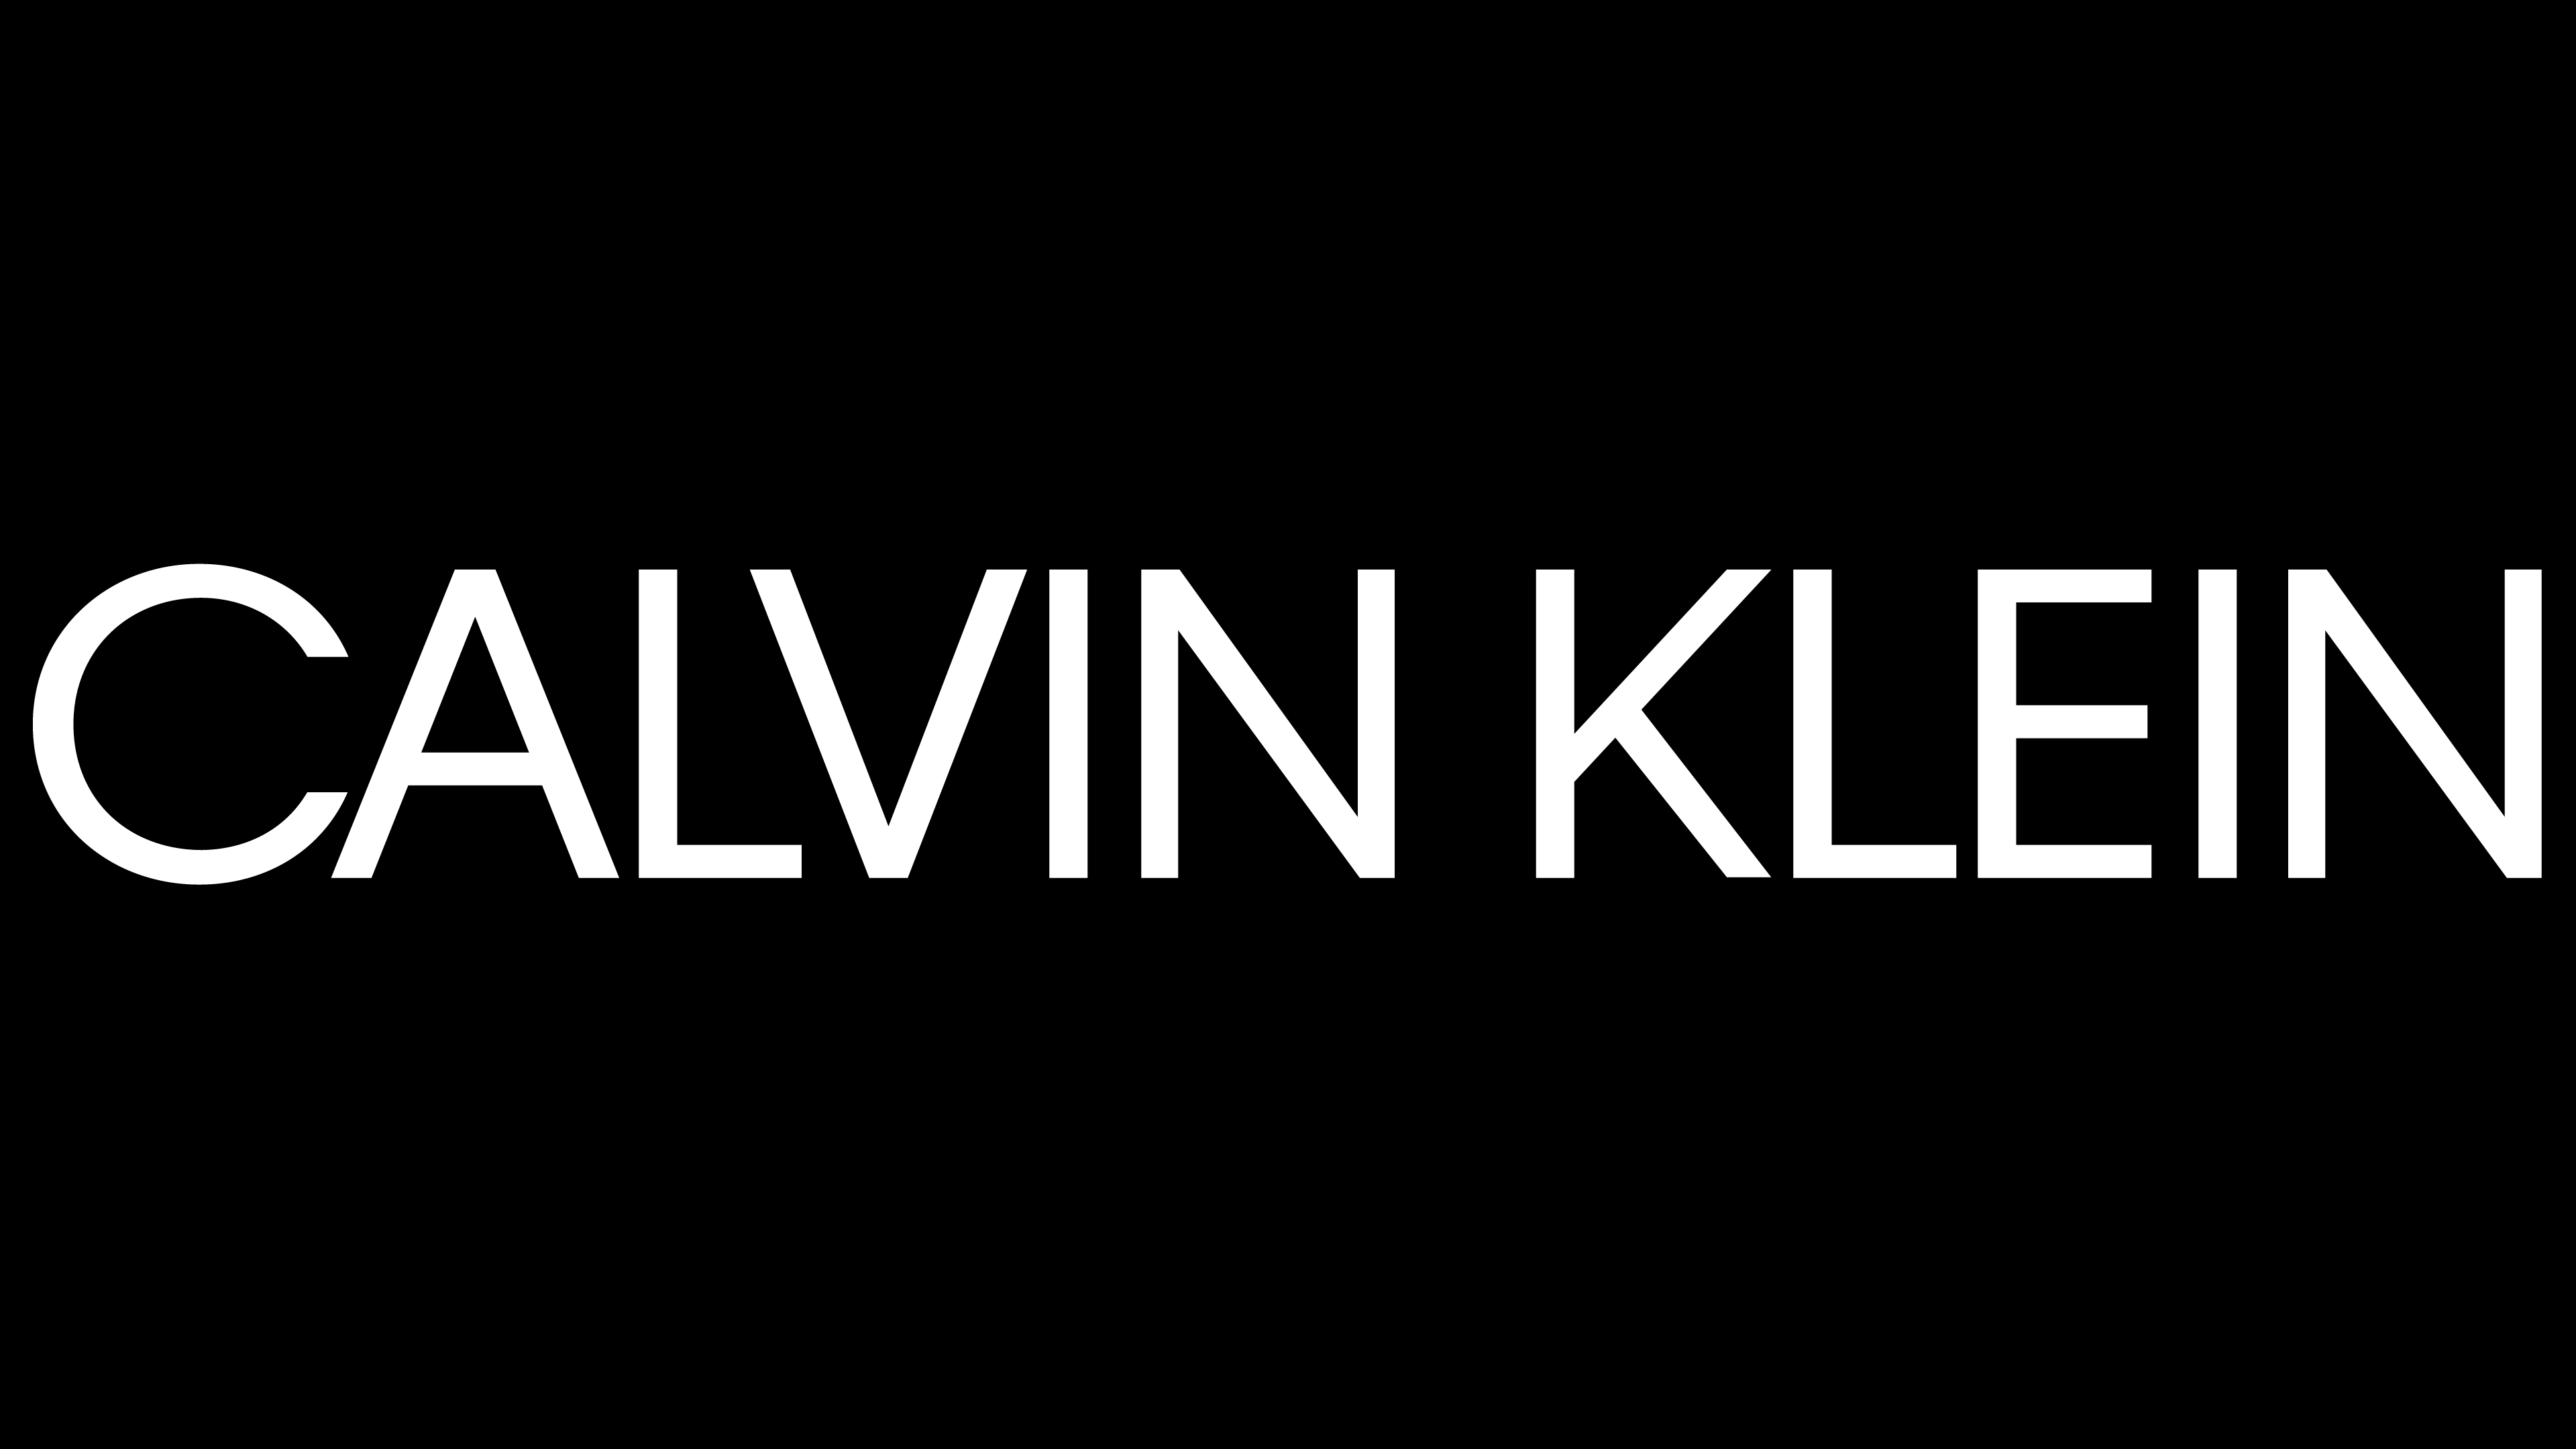 Blanco Logo - Calvin Klein logo | LOGOS de MARCAS